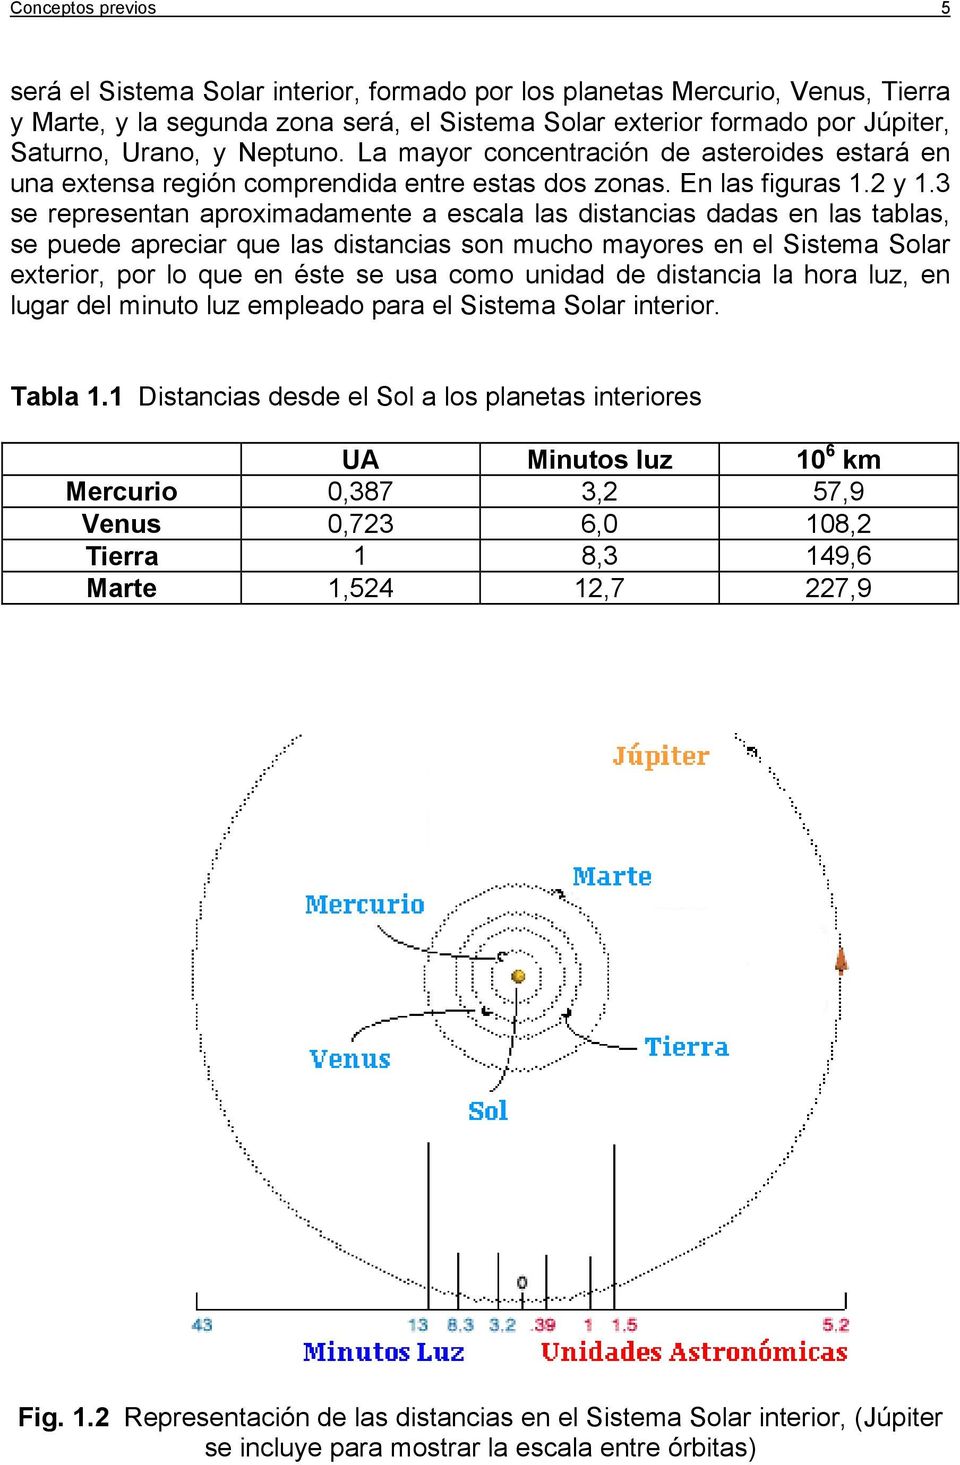 3 se representan aproxmadamente a esala las dstanas dadas en las tablas, se puede aprear que las dstanas son muho mayores en el Sstema Solar exteror, por lo que en éste se usa omo undad de dstana la